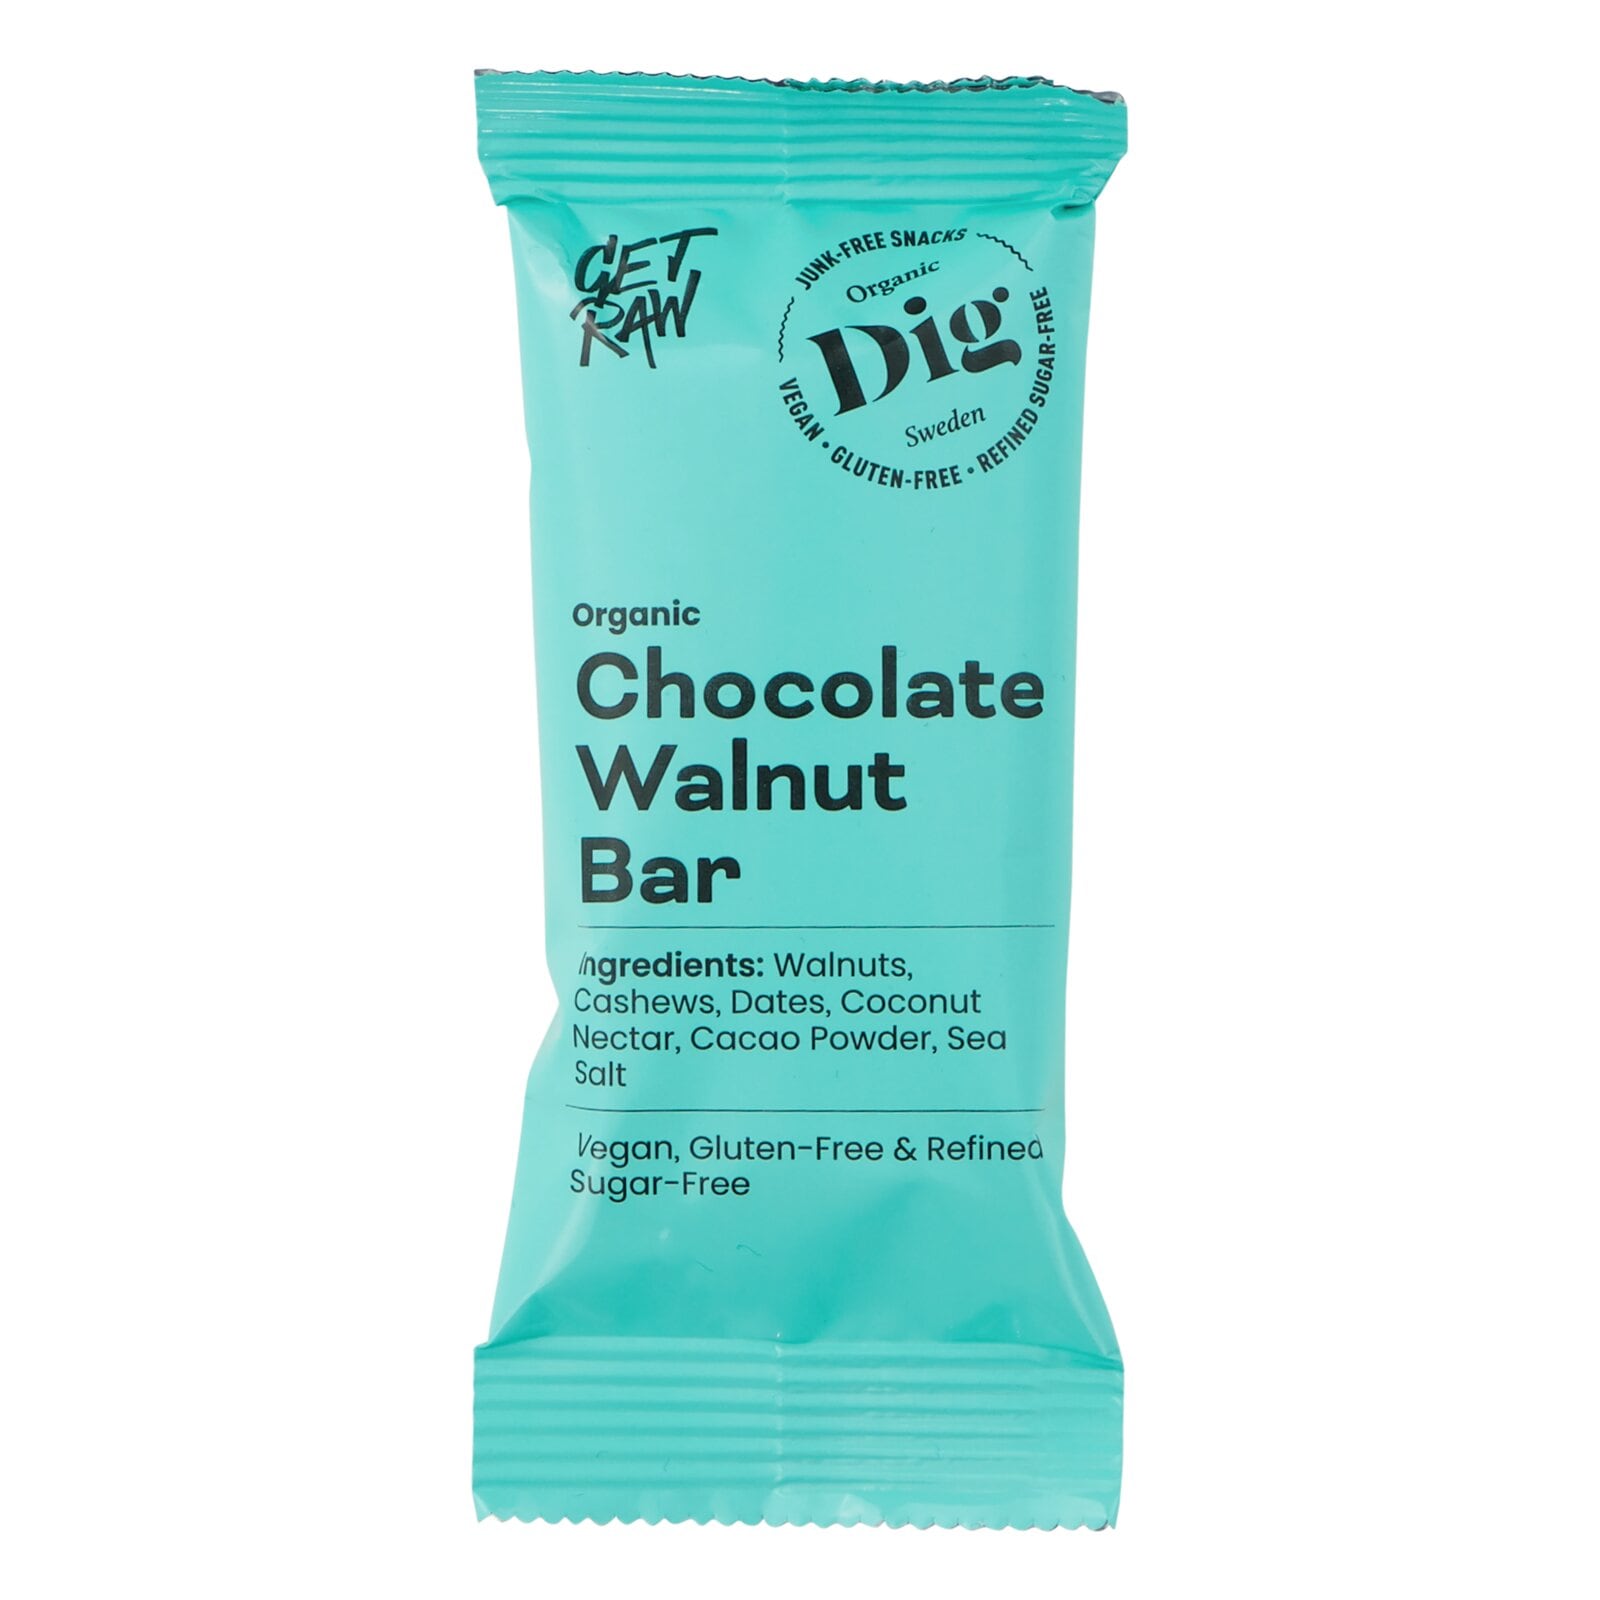 Dig Chocolate Walnut Bar